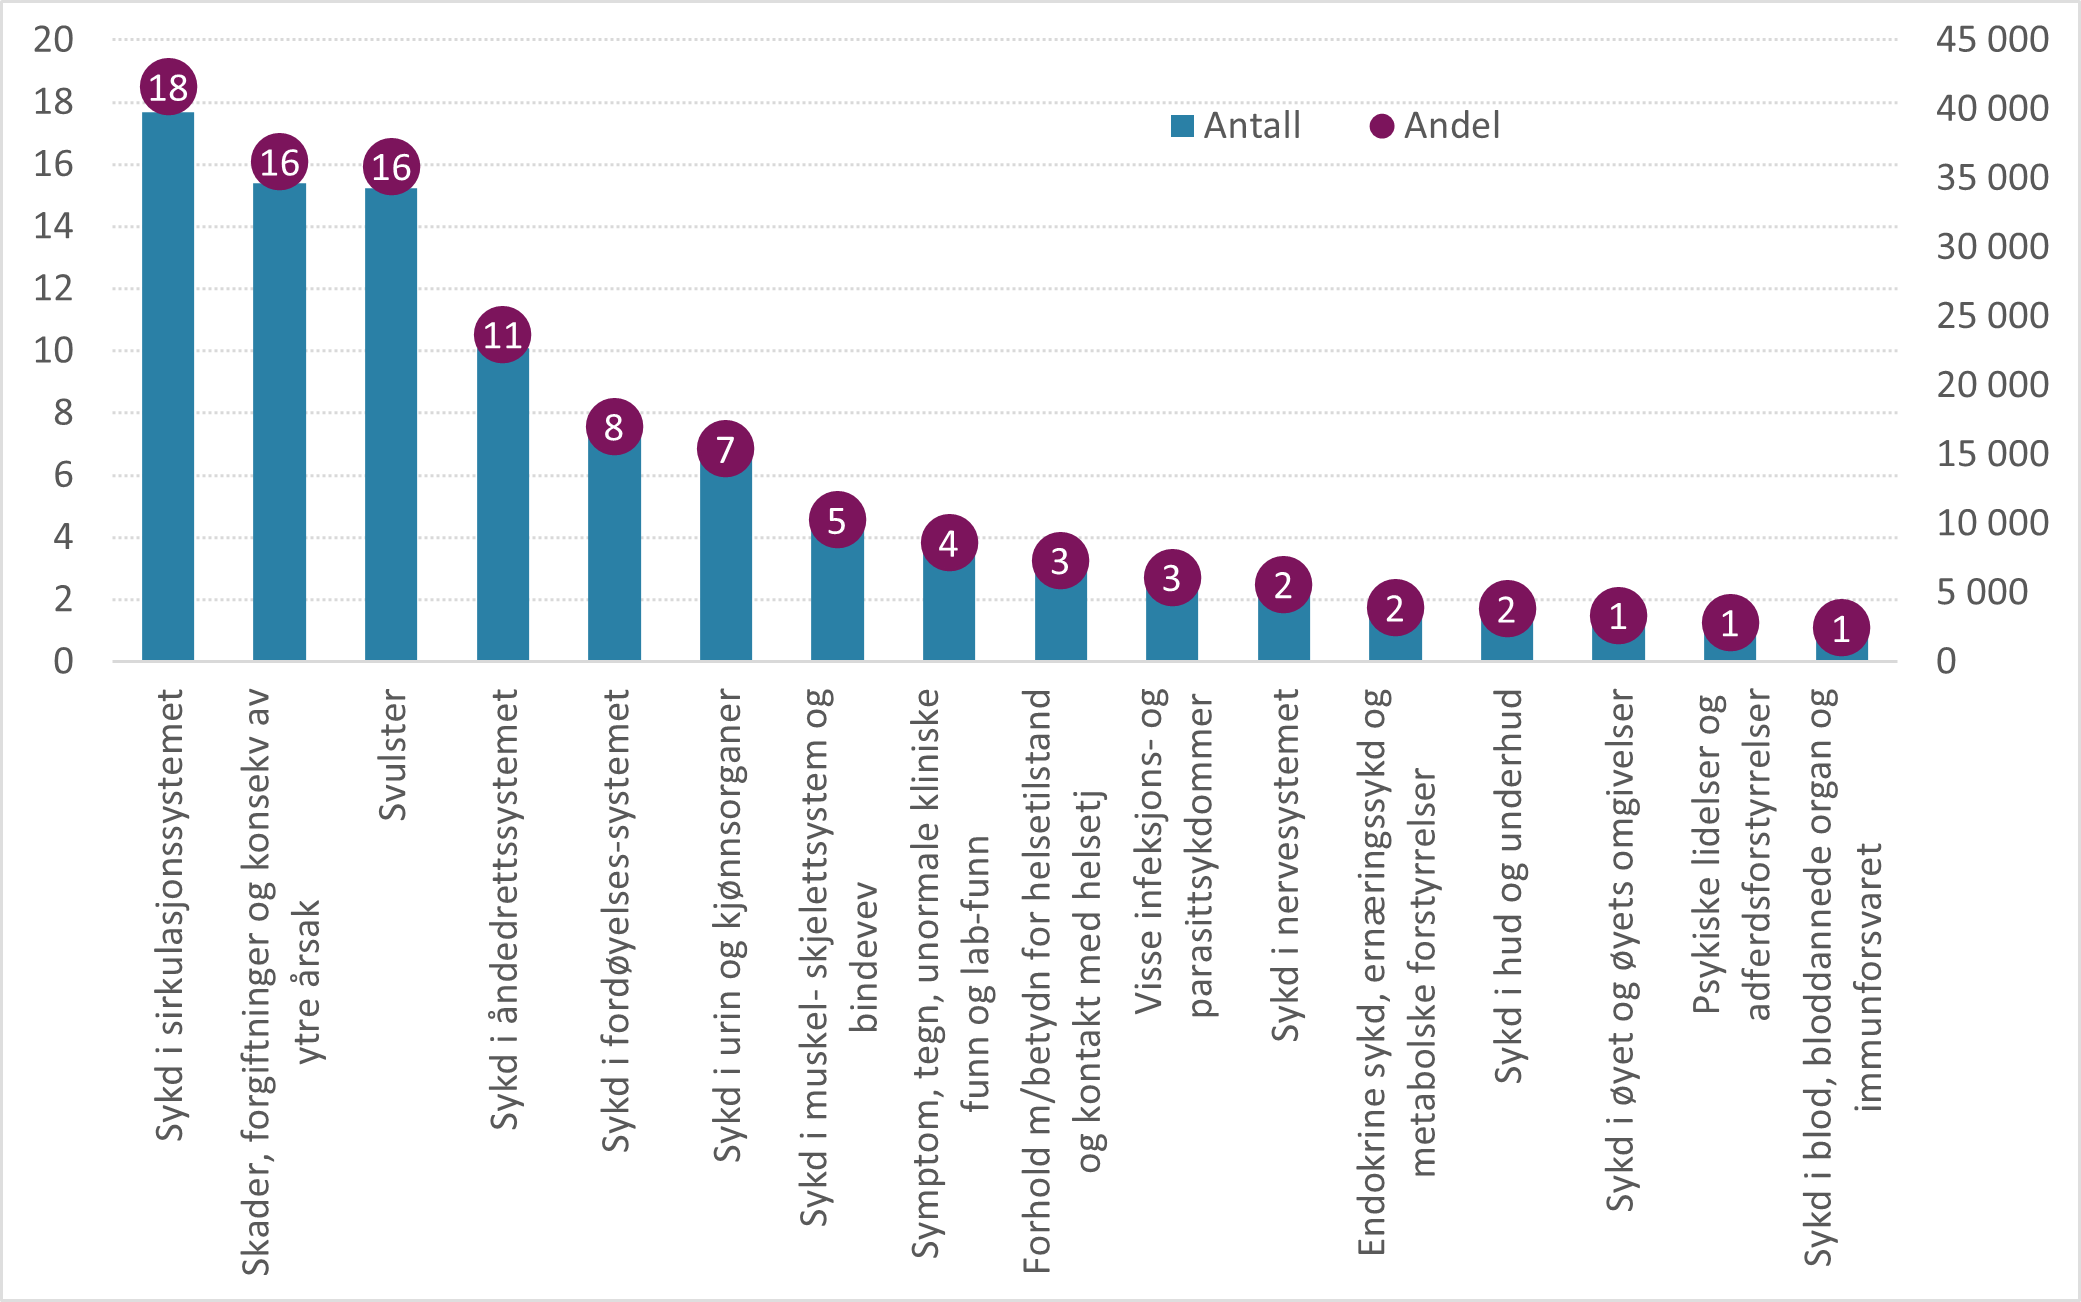 Antall og andel DRG-poeng etter hovedkapitlene i ICD-10 for skrøpelige eldre 2021.